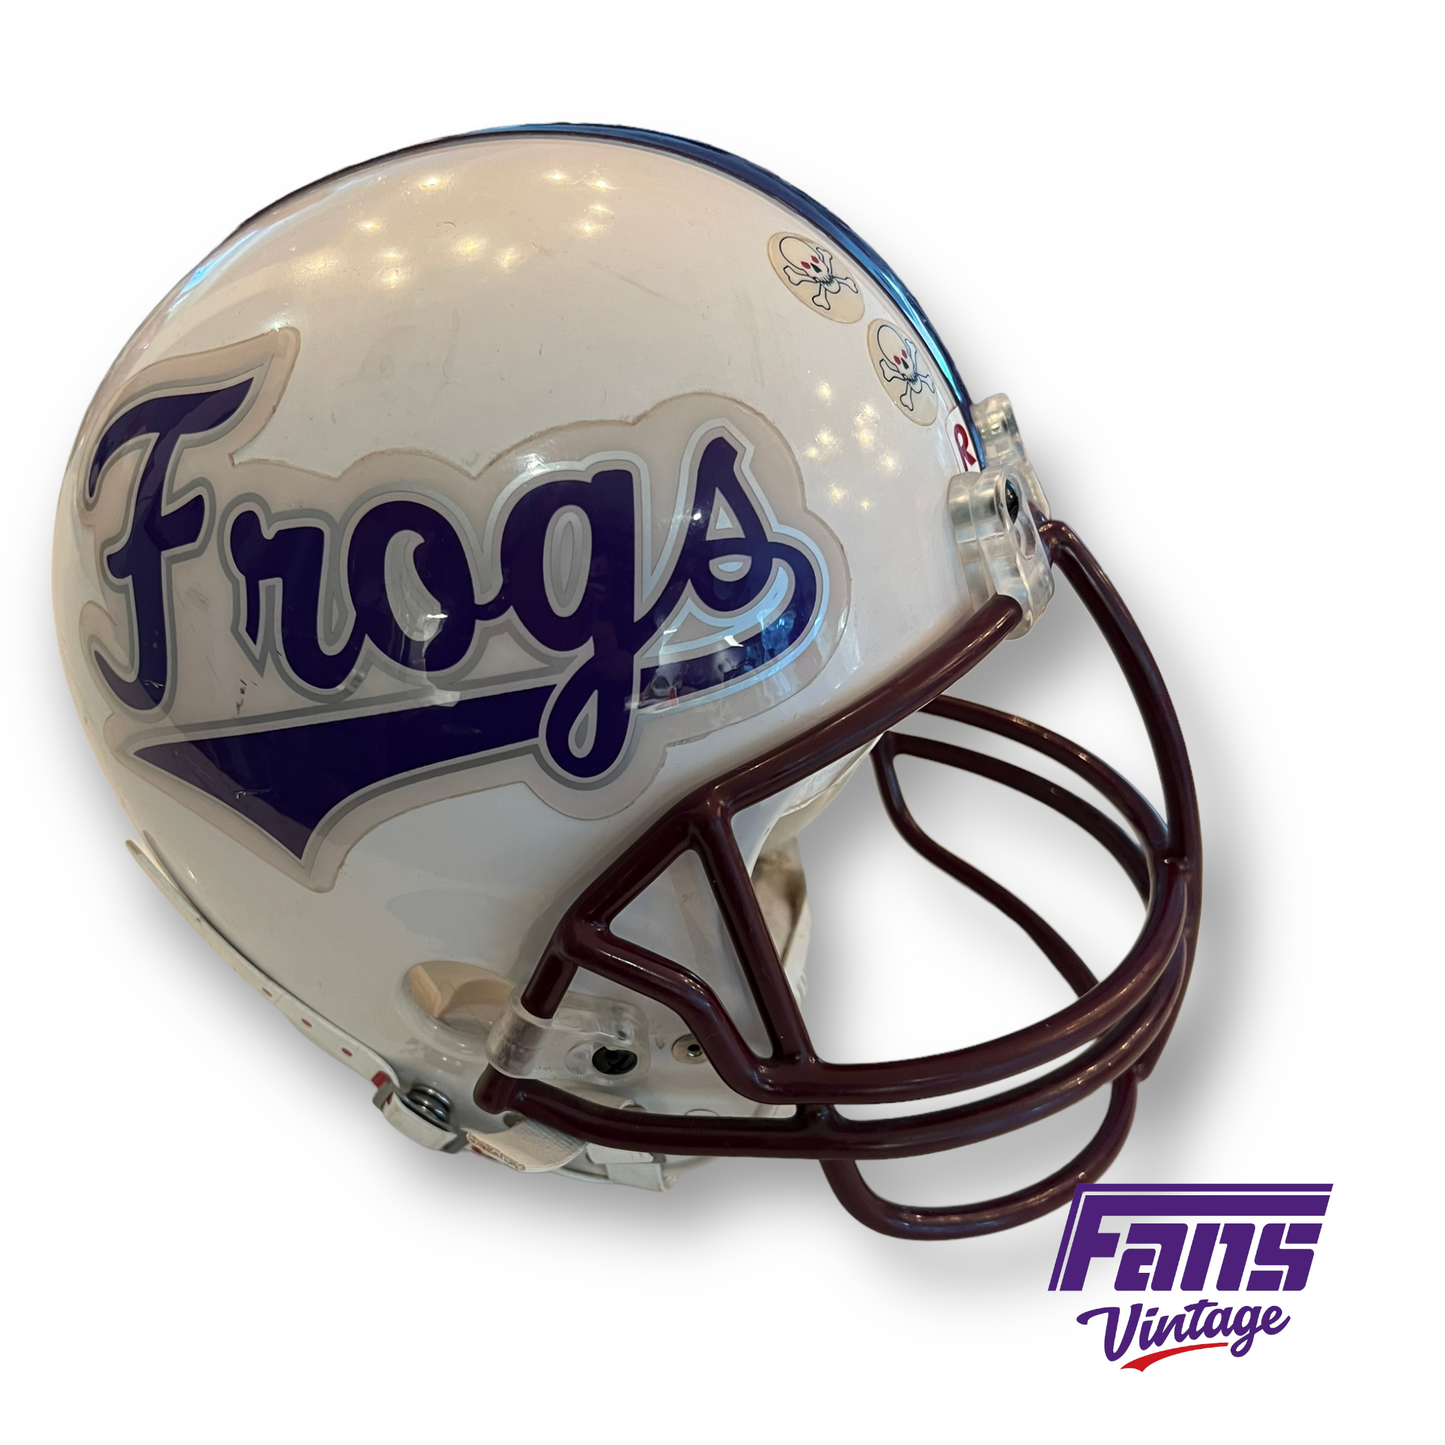 Unique! Script font "Frogs" Vintage 80s Football Helmet